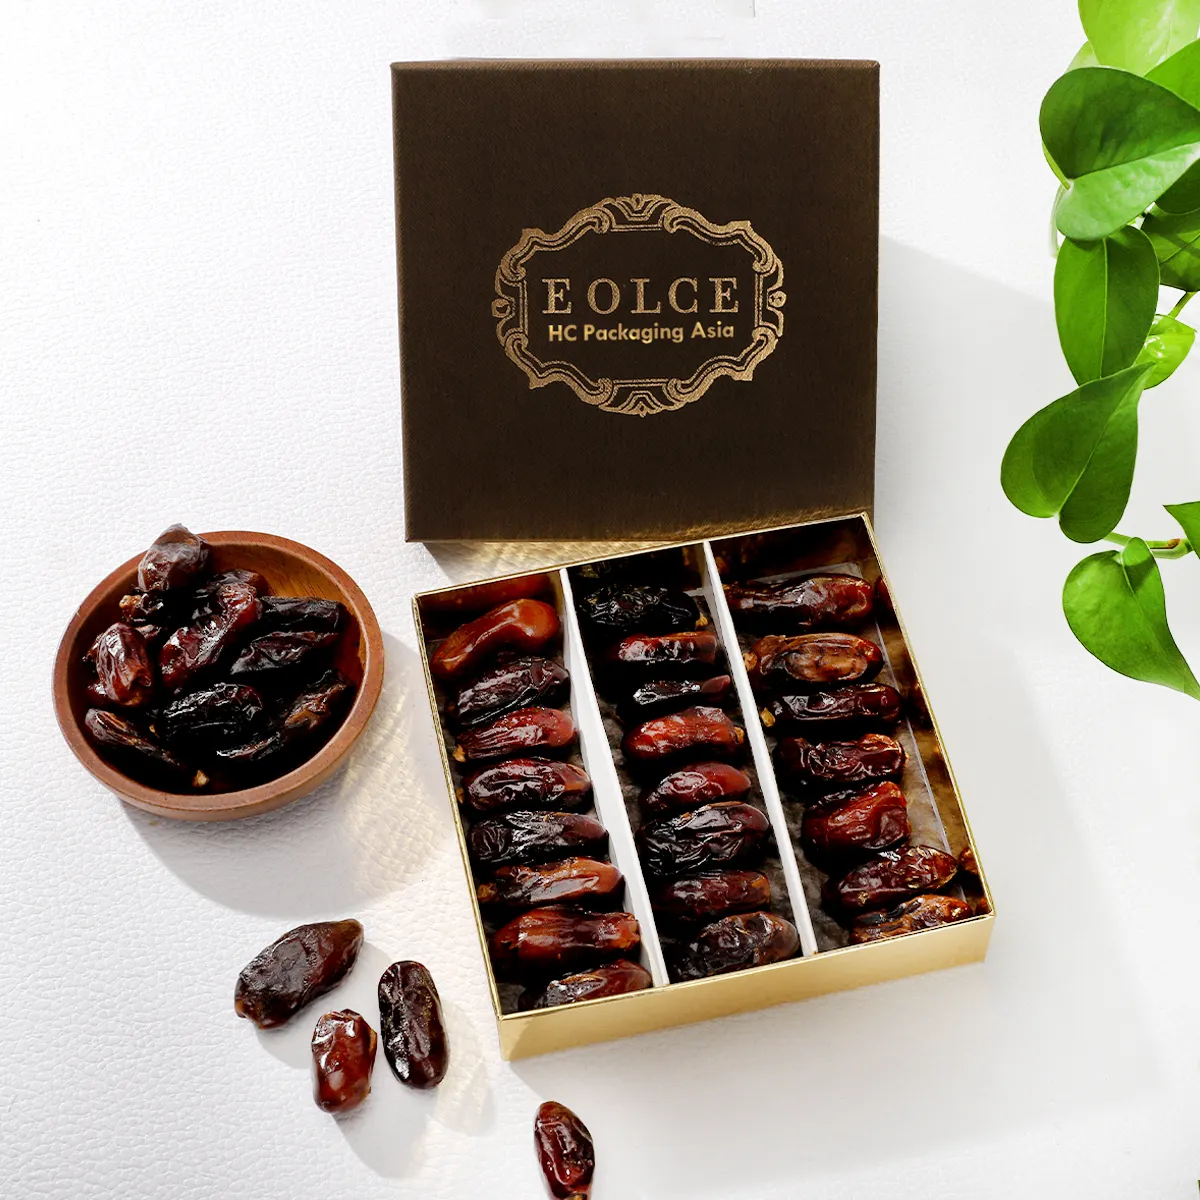 Kertas kerajinan ramping kotak coklat Arab cokelat tanggal kotak palem tren baru untuk valentine/hari Noel/hadiah untuk teman